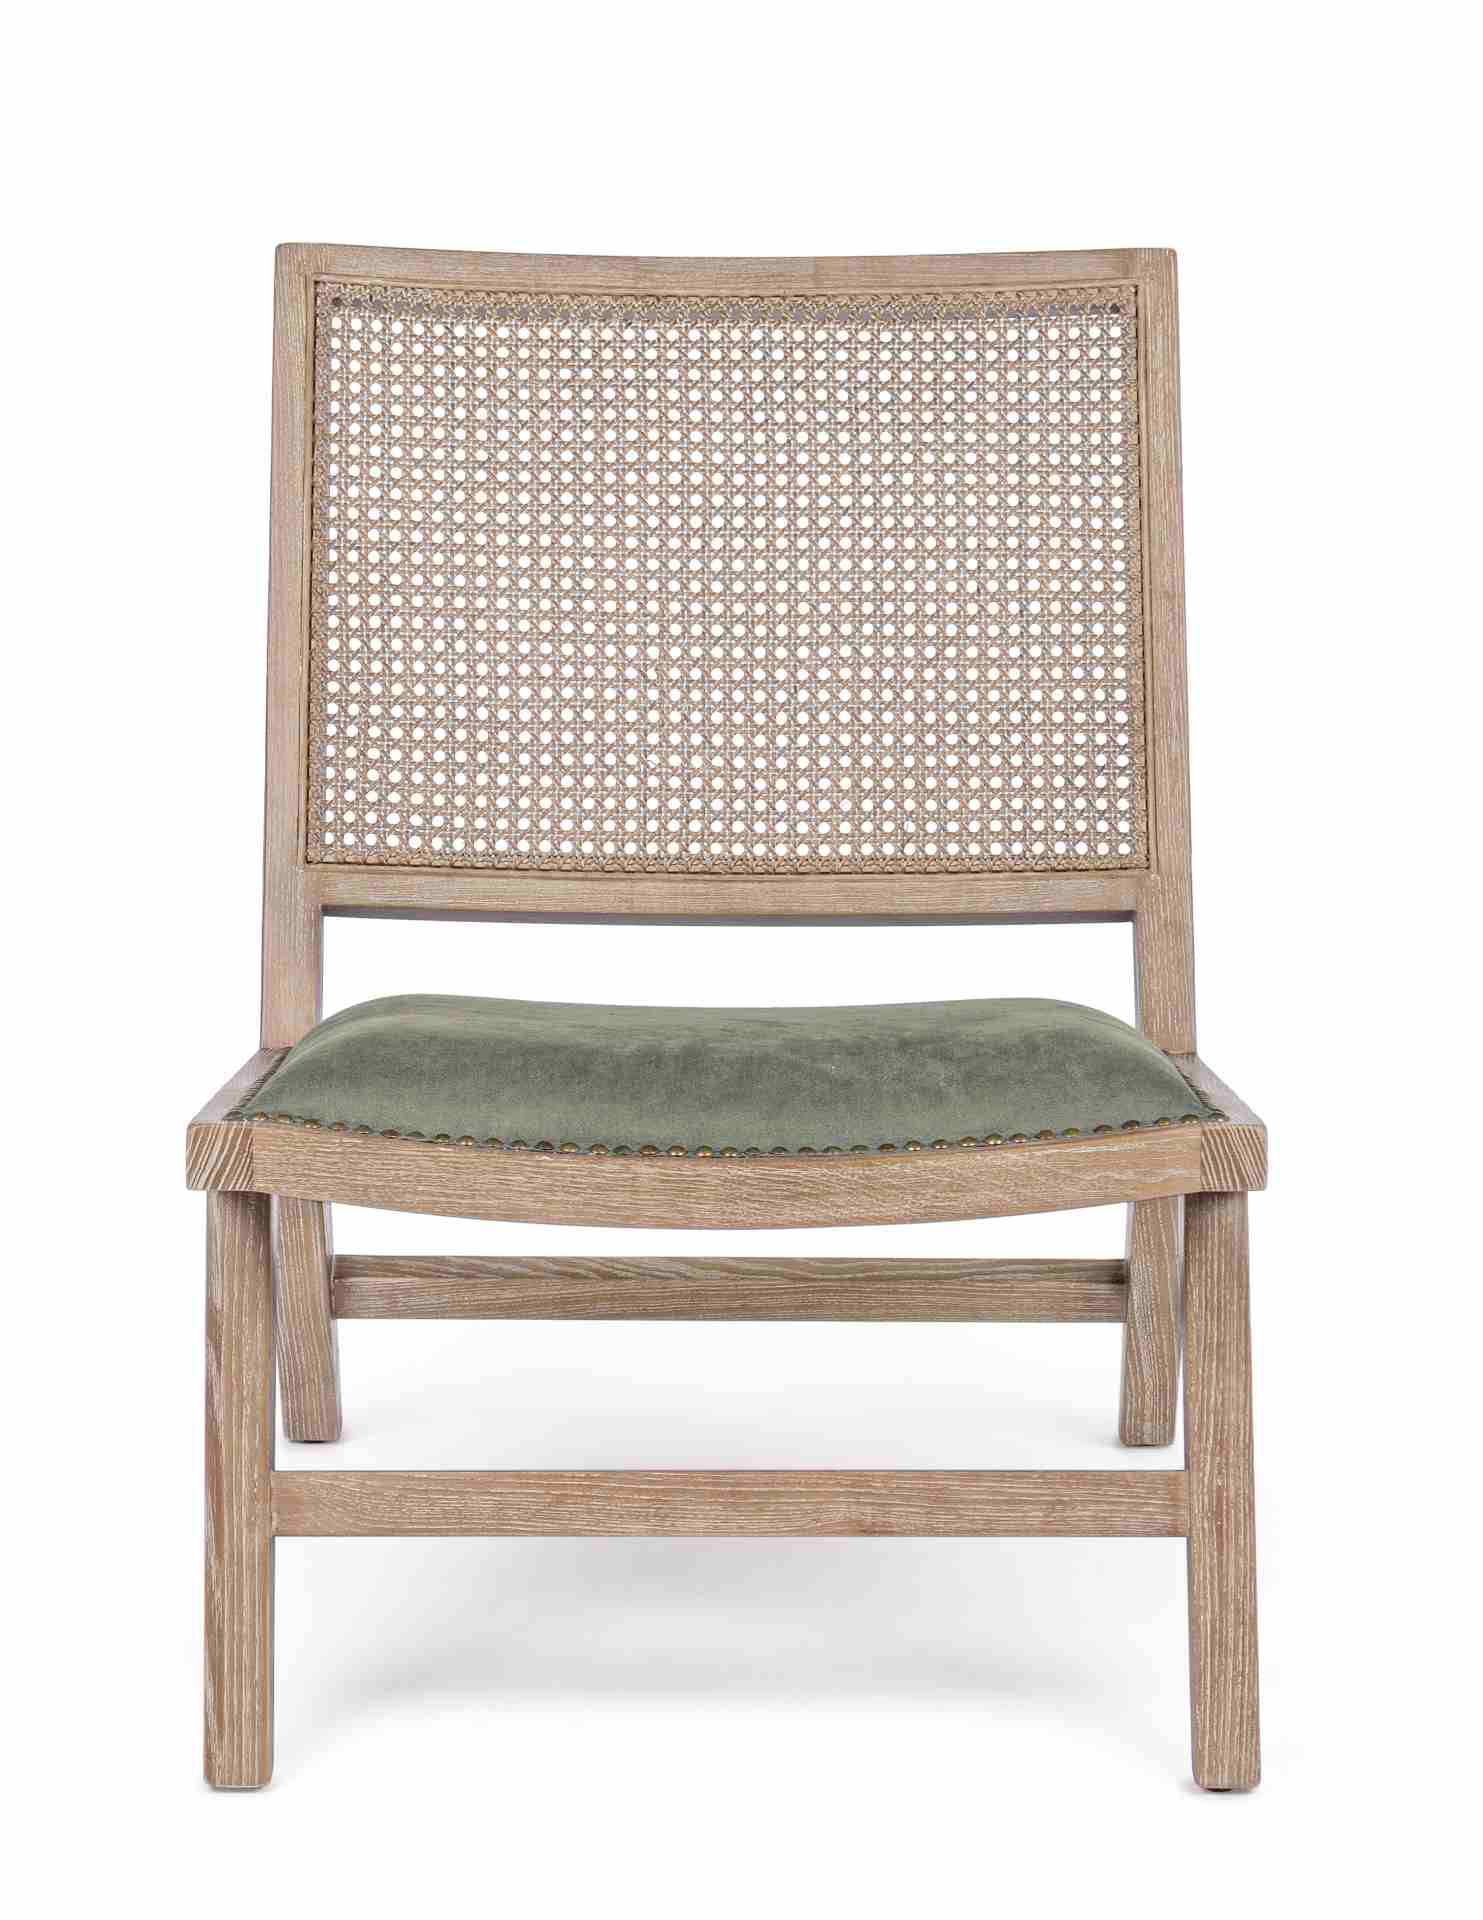 Der Sessel Cortilla überzeugt mit seinem klassischen Design. Gefertigt wurde er aus Stoff, welcher einen grünen Farbton besitzt. Das Gestell ist aus Eschenholz und hat eine natürliche Farbe. Der Sessel besitzt eine Sitzhöhe von 40 cm. Die Breite beträgt 5